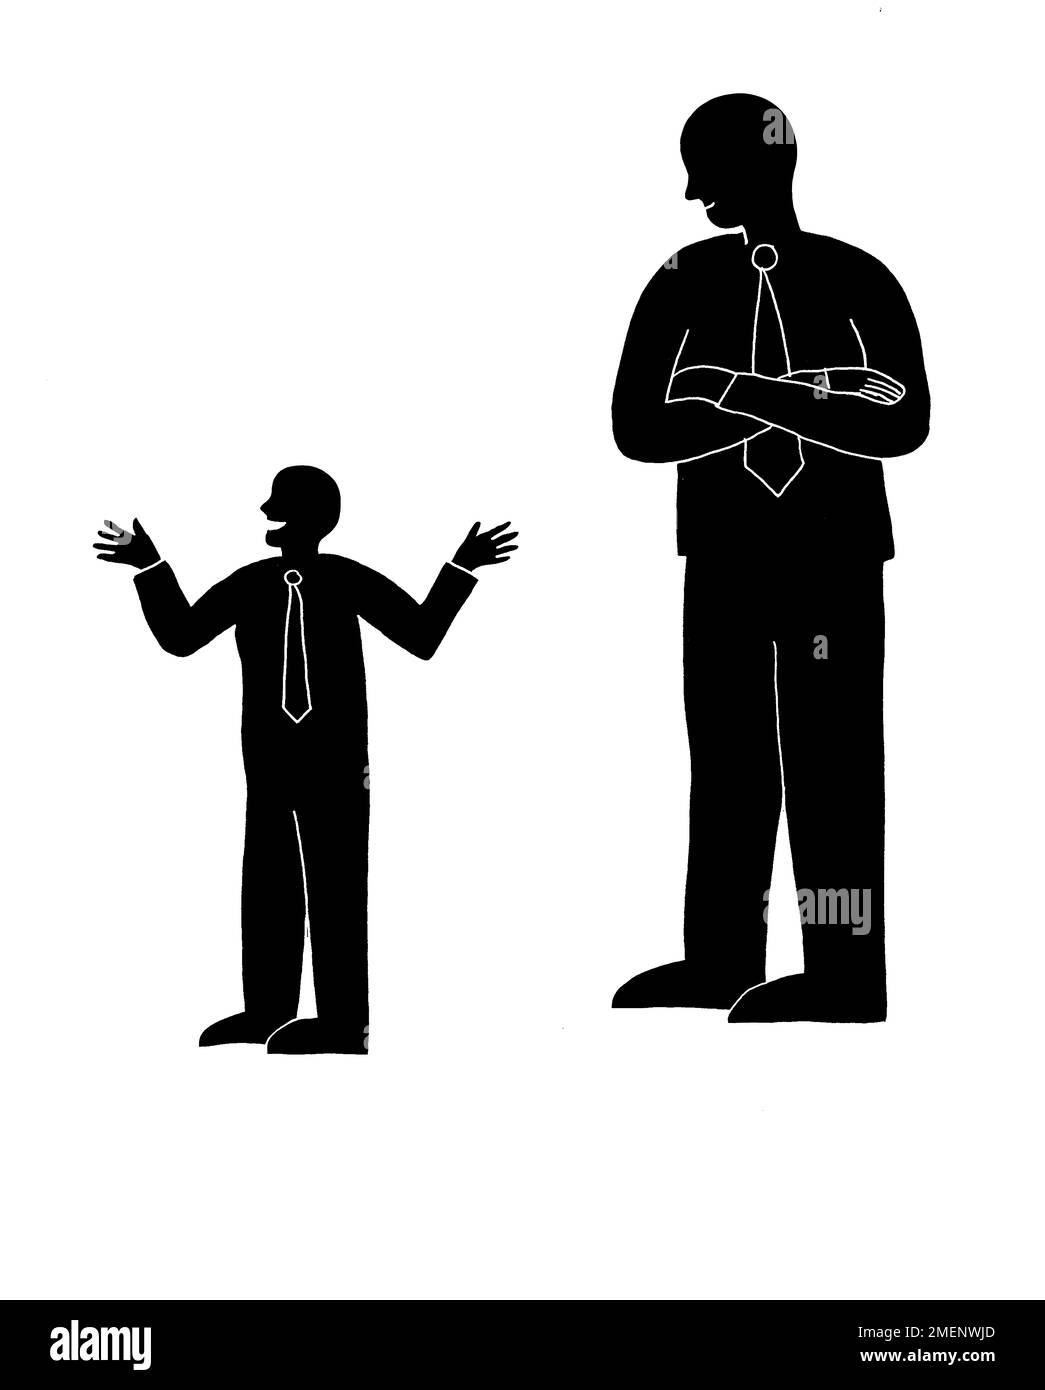 Immagine in bianco e nero di un grande uomo d'affari che ripiega le braccia accanto a un piccolo uomo d'affari. Foto Stock